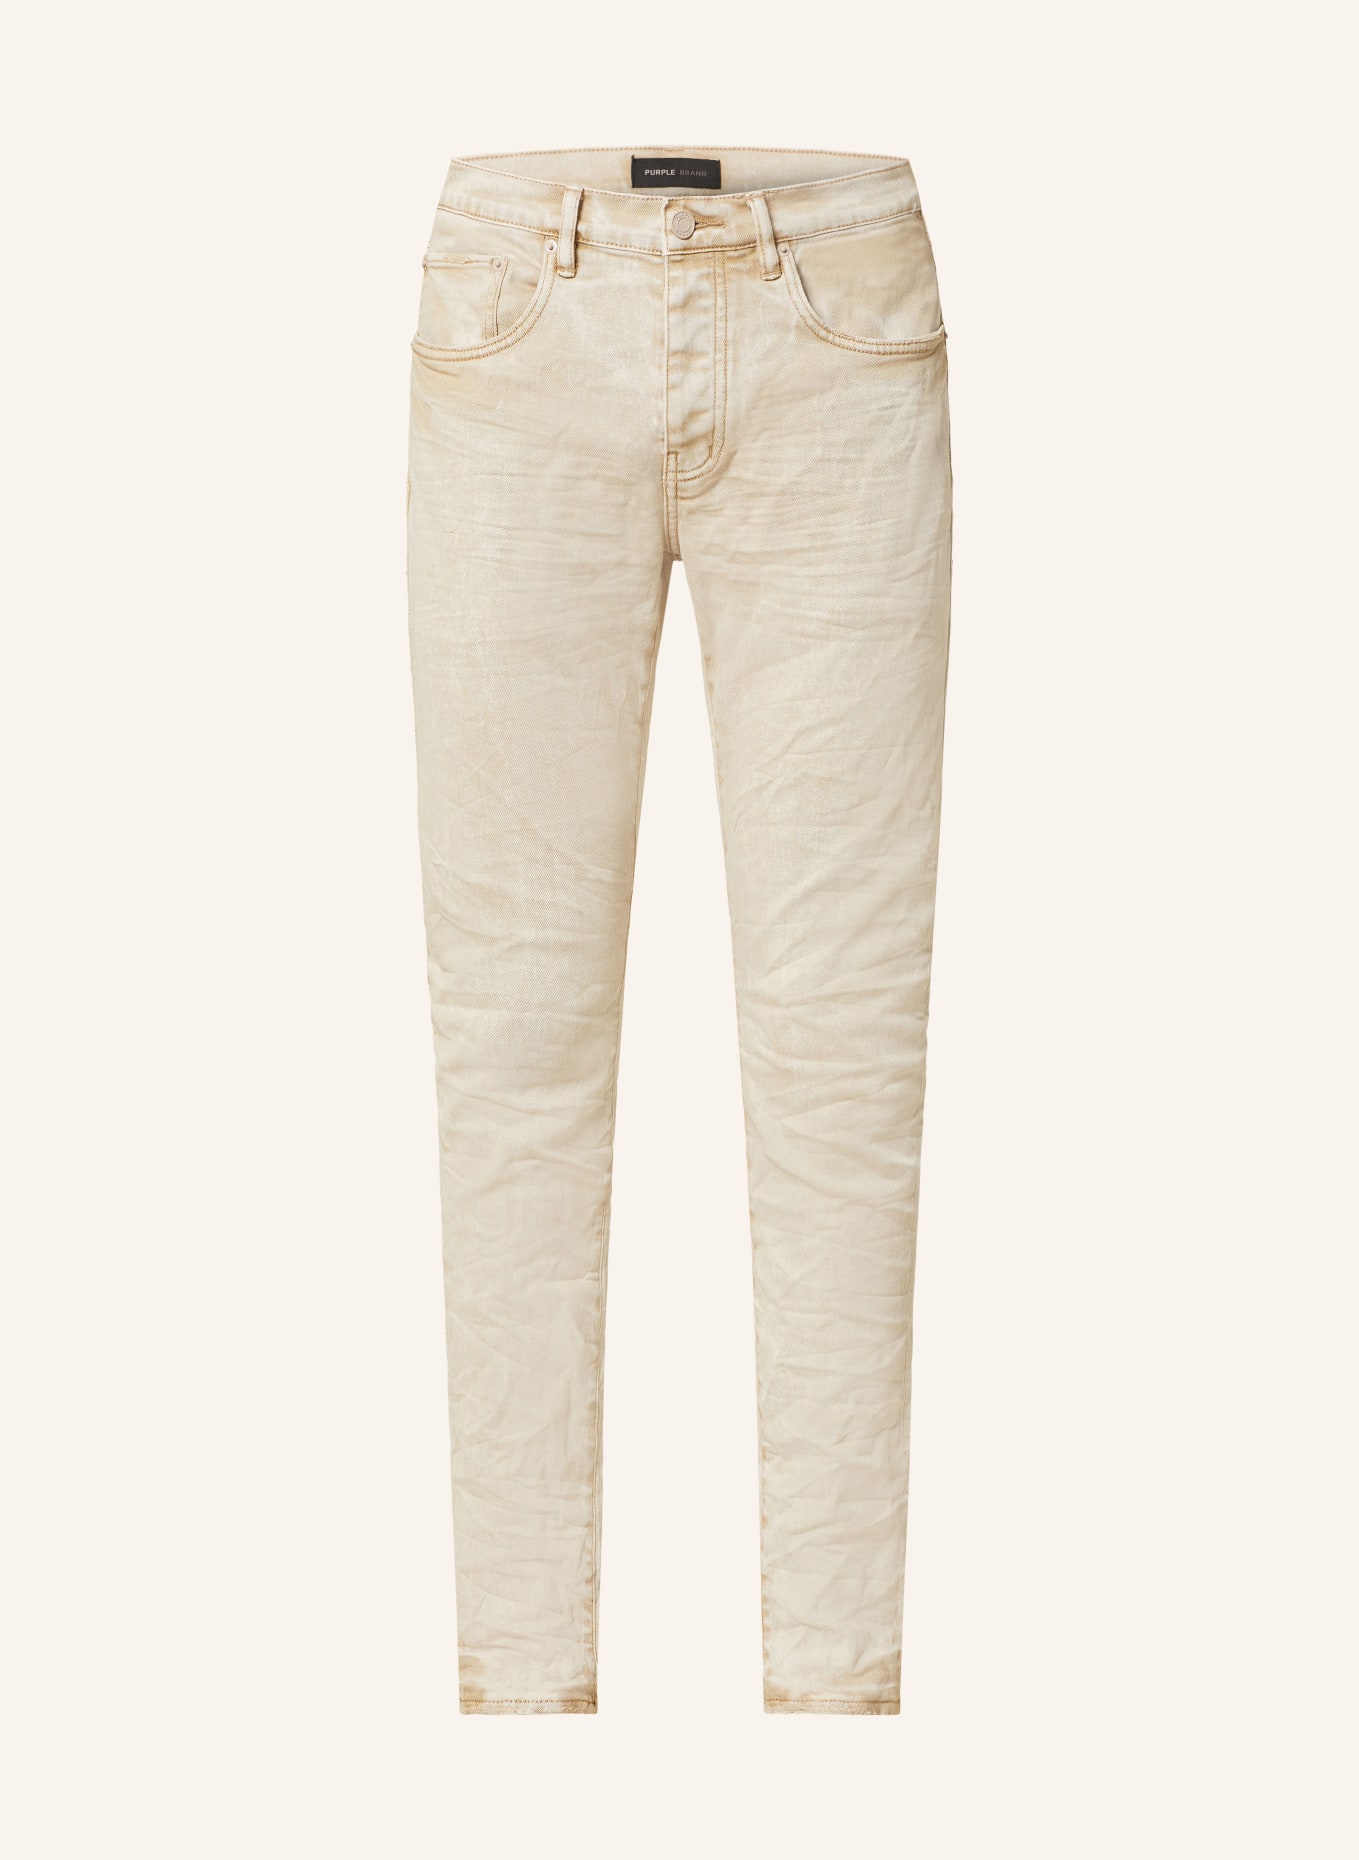 PURPLE BRAND Jeans Skinny Fit, Farbe: KHAKI (Bild 1)